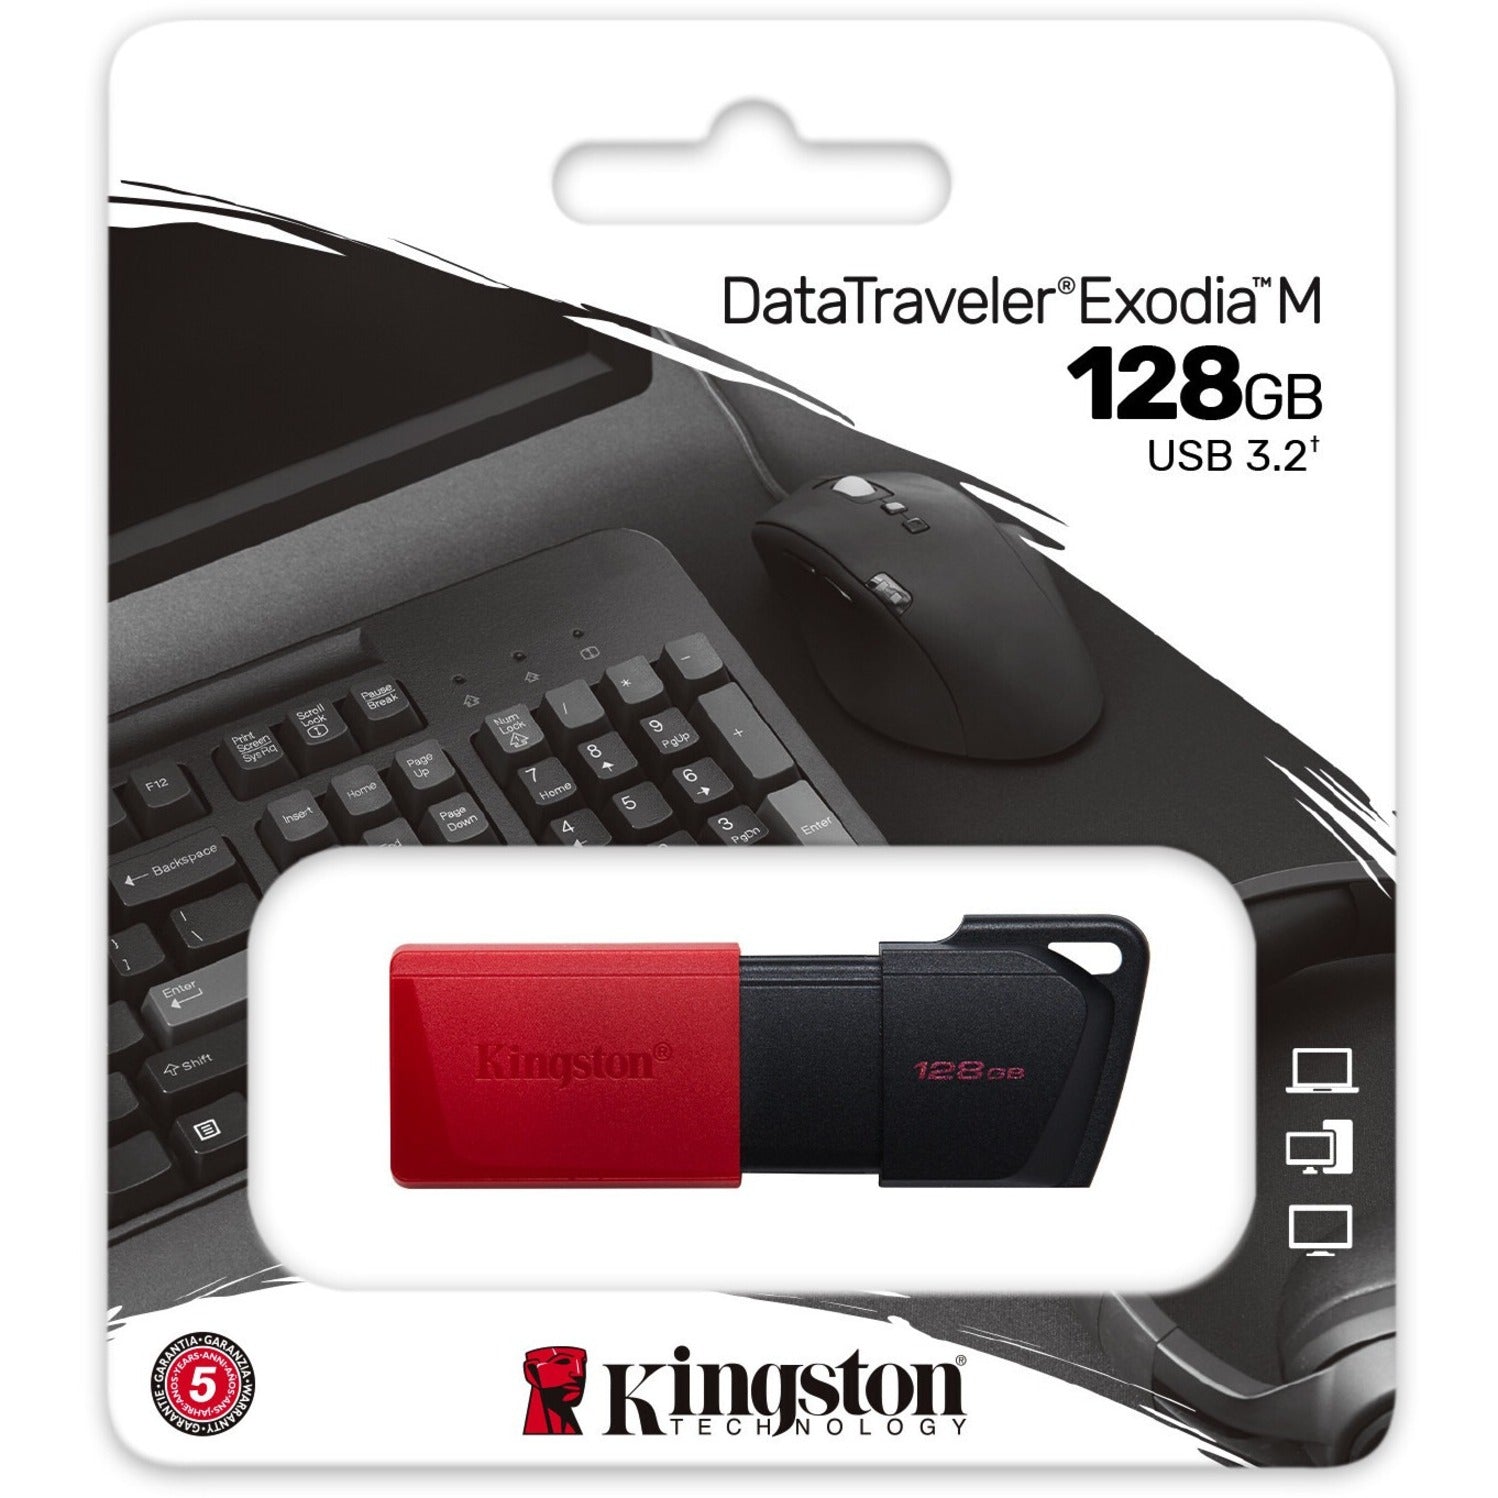 كينجستون DTXM/128GB داتاترافيلر إكسوديا إم محرك أقراص فلاش USB، تخزين ١٢٨ جيجابايت، خفيف الوزن، غطاء انزلاقي، حلقة مفاتيح، محمول